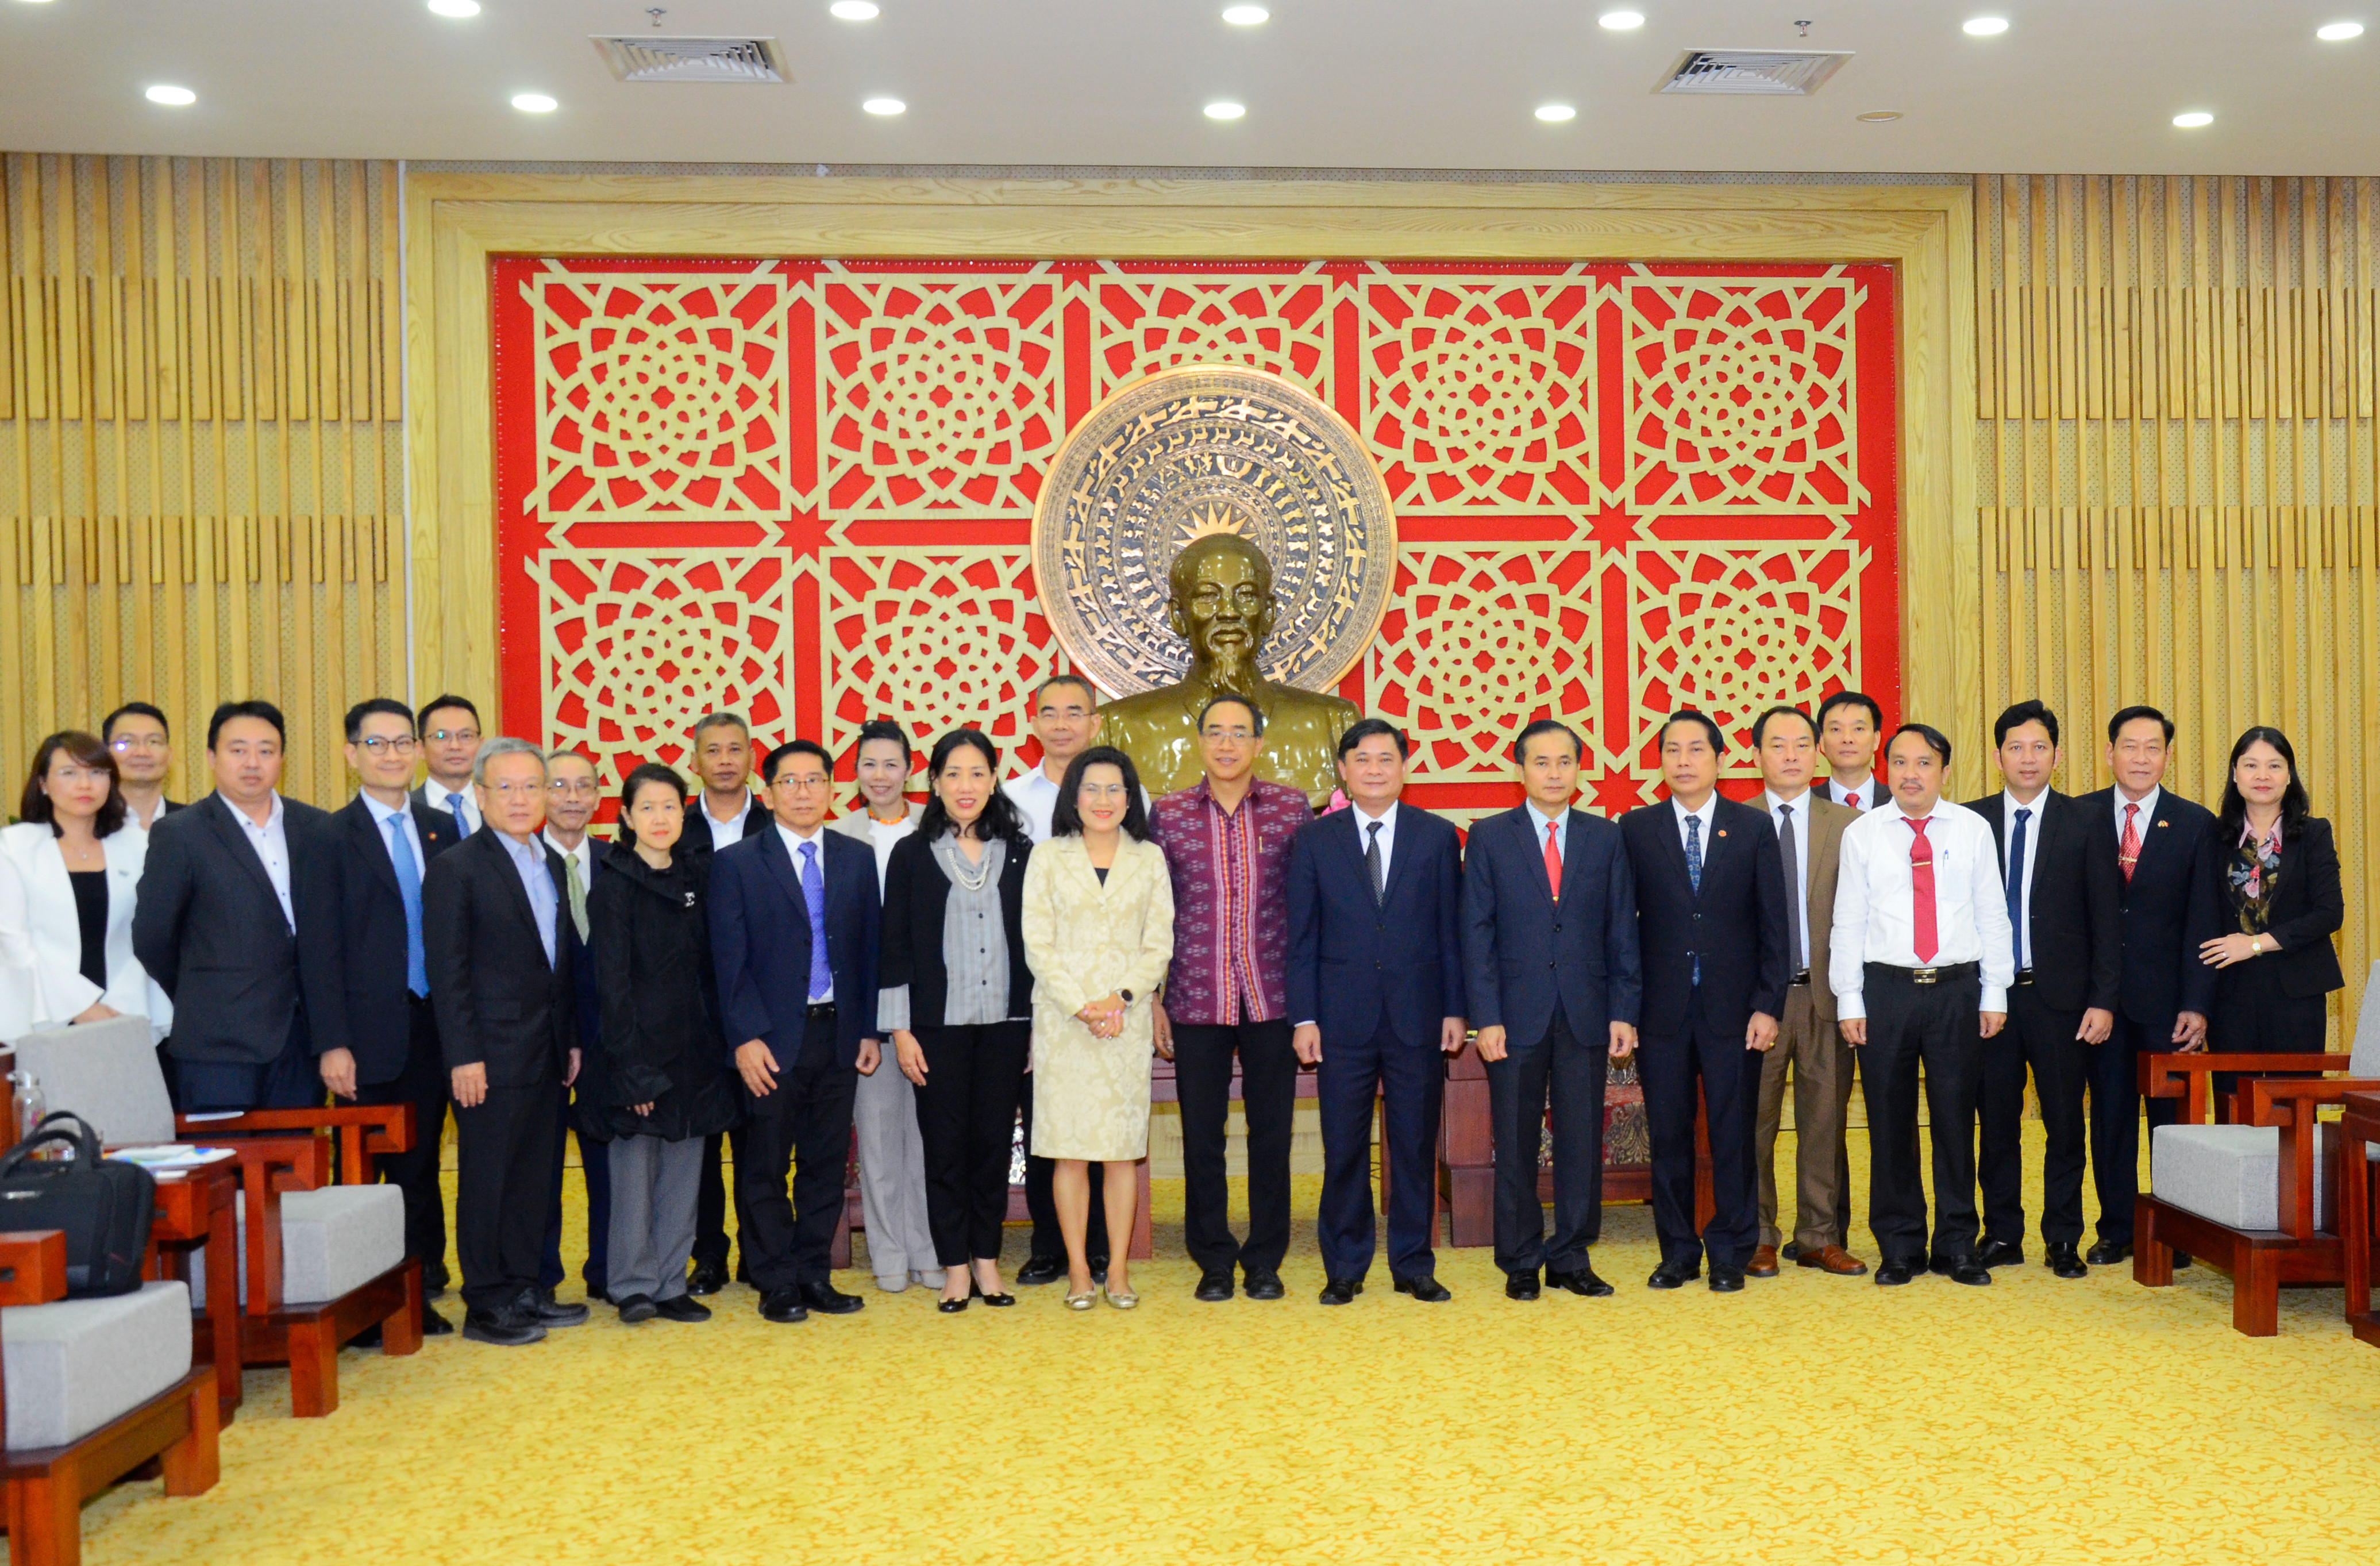 Đoàn đại sứ Thái Lan chụp ảnh lưu niệm cùng lãnh đạo tỉnh Nghệ An. Ảnh: Thanh Lê